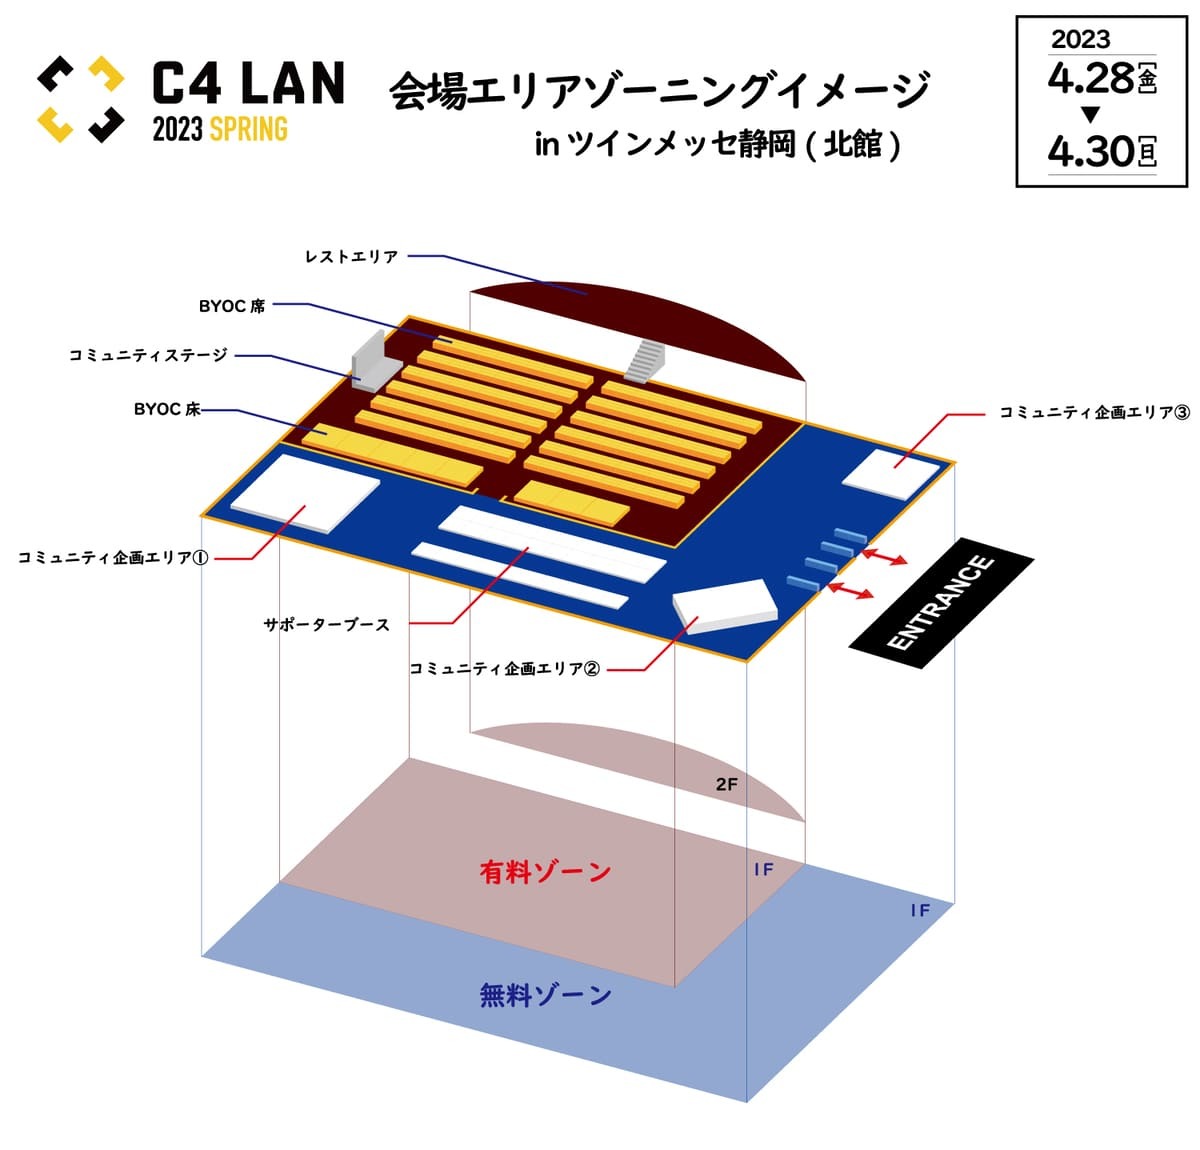 C4 LAN 2023 SPRING 会場マップ